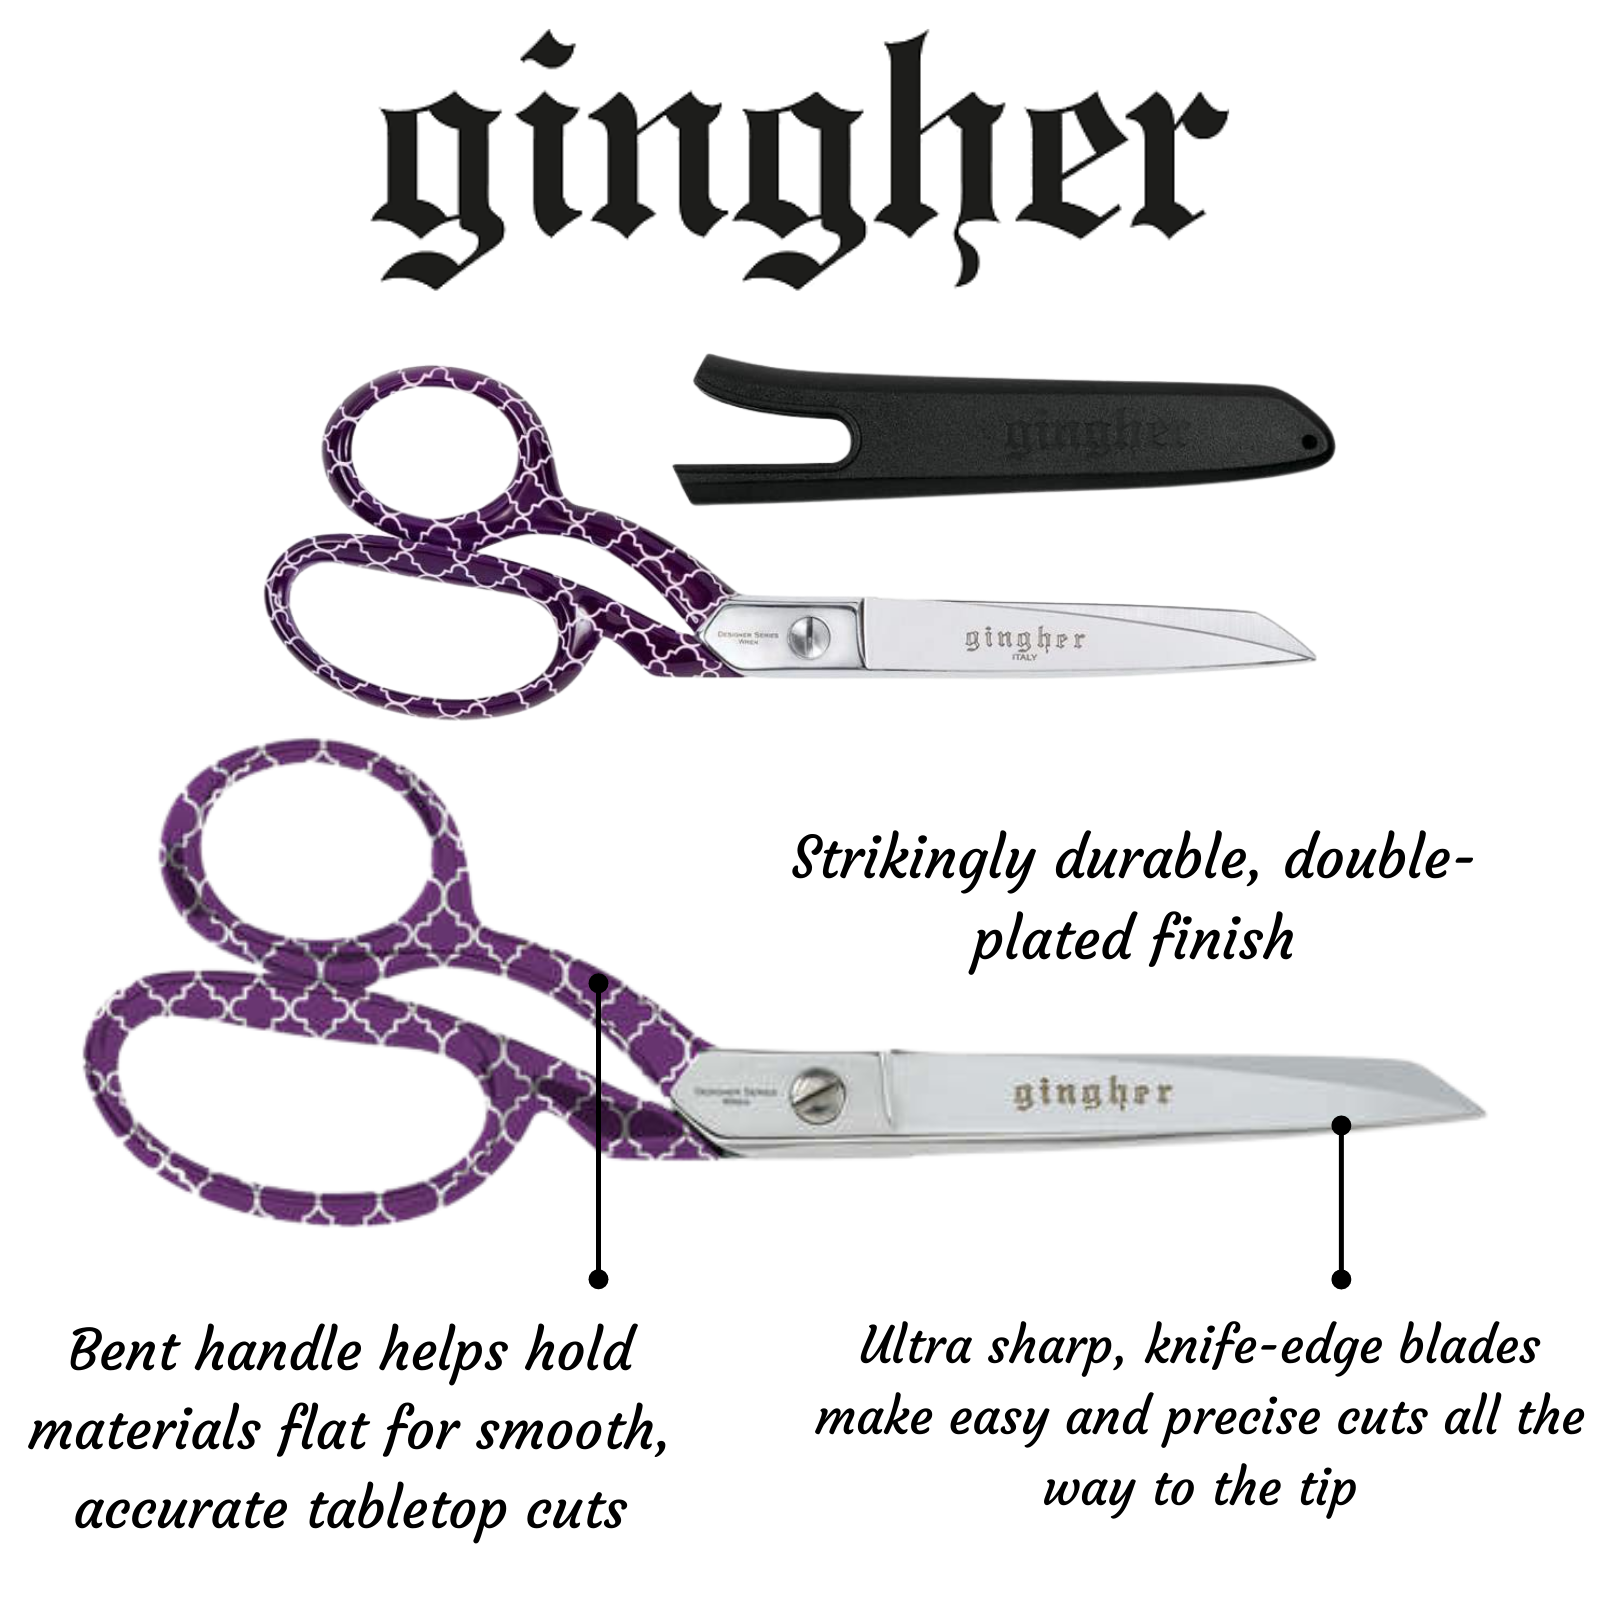 Gingher Wren LEFT HANDED Knife-Edge Dressmaker Shears 8